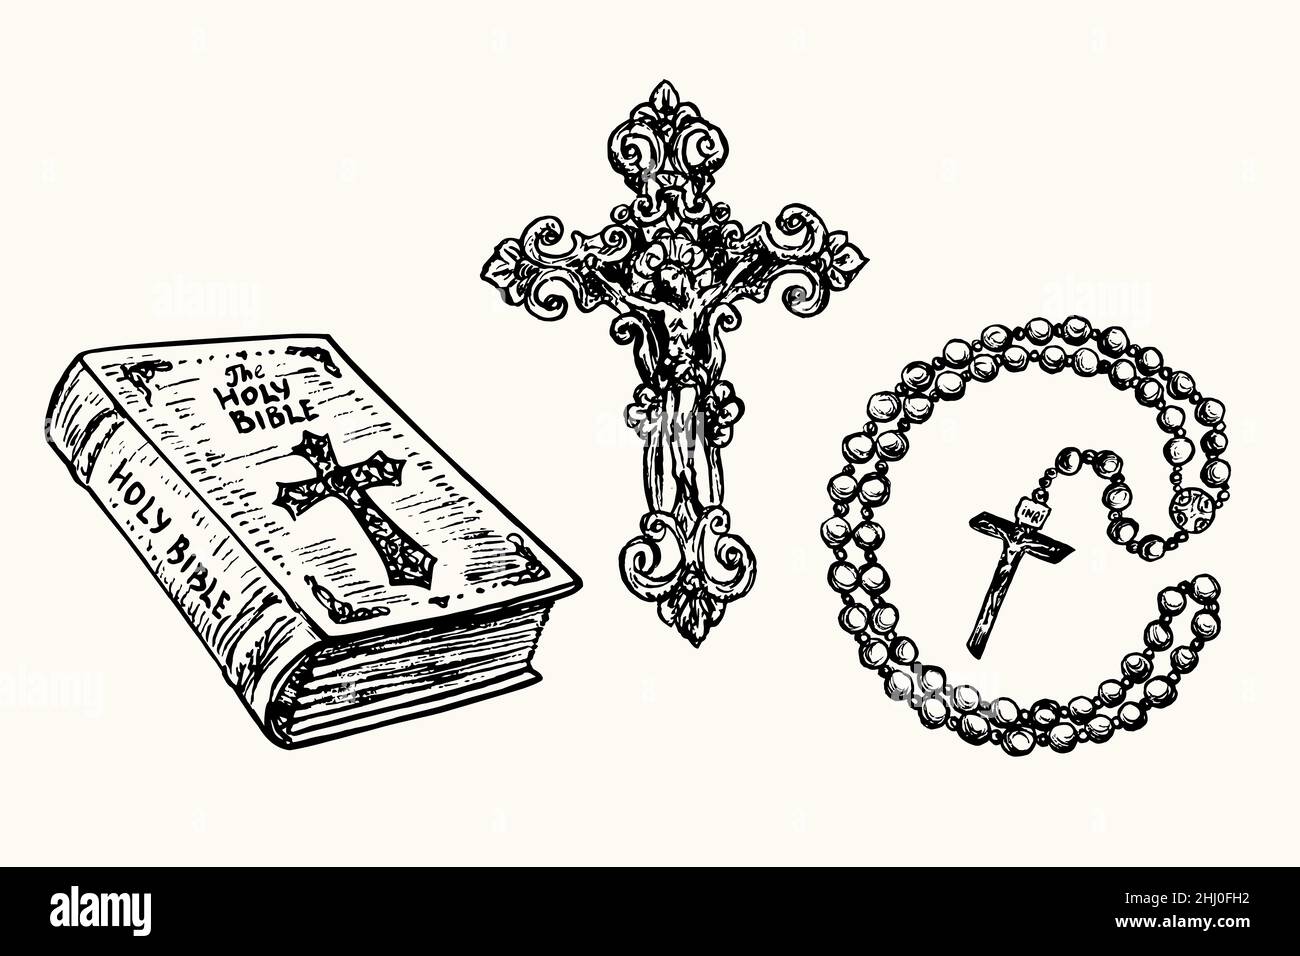 Bibbia di Holly in stile vintage, croce decorativa con Crocifissione, perle di preghiera (perle di rosario cattolico romano). Immagine del disegno in bianco e nero con inchiostro Foto Stock